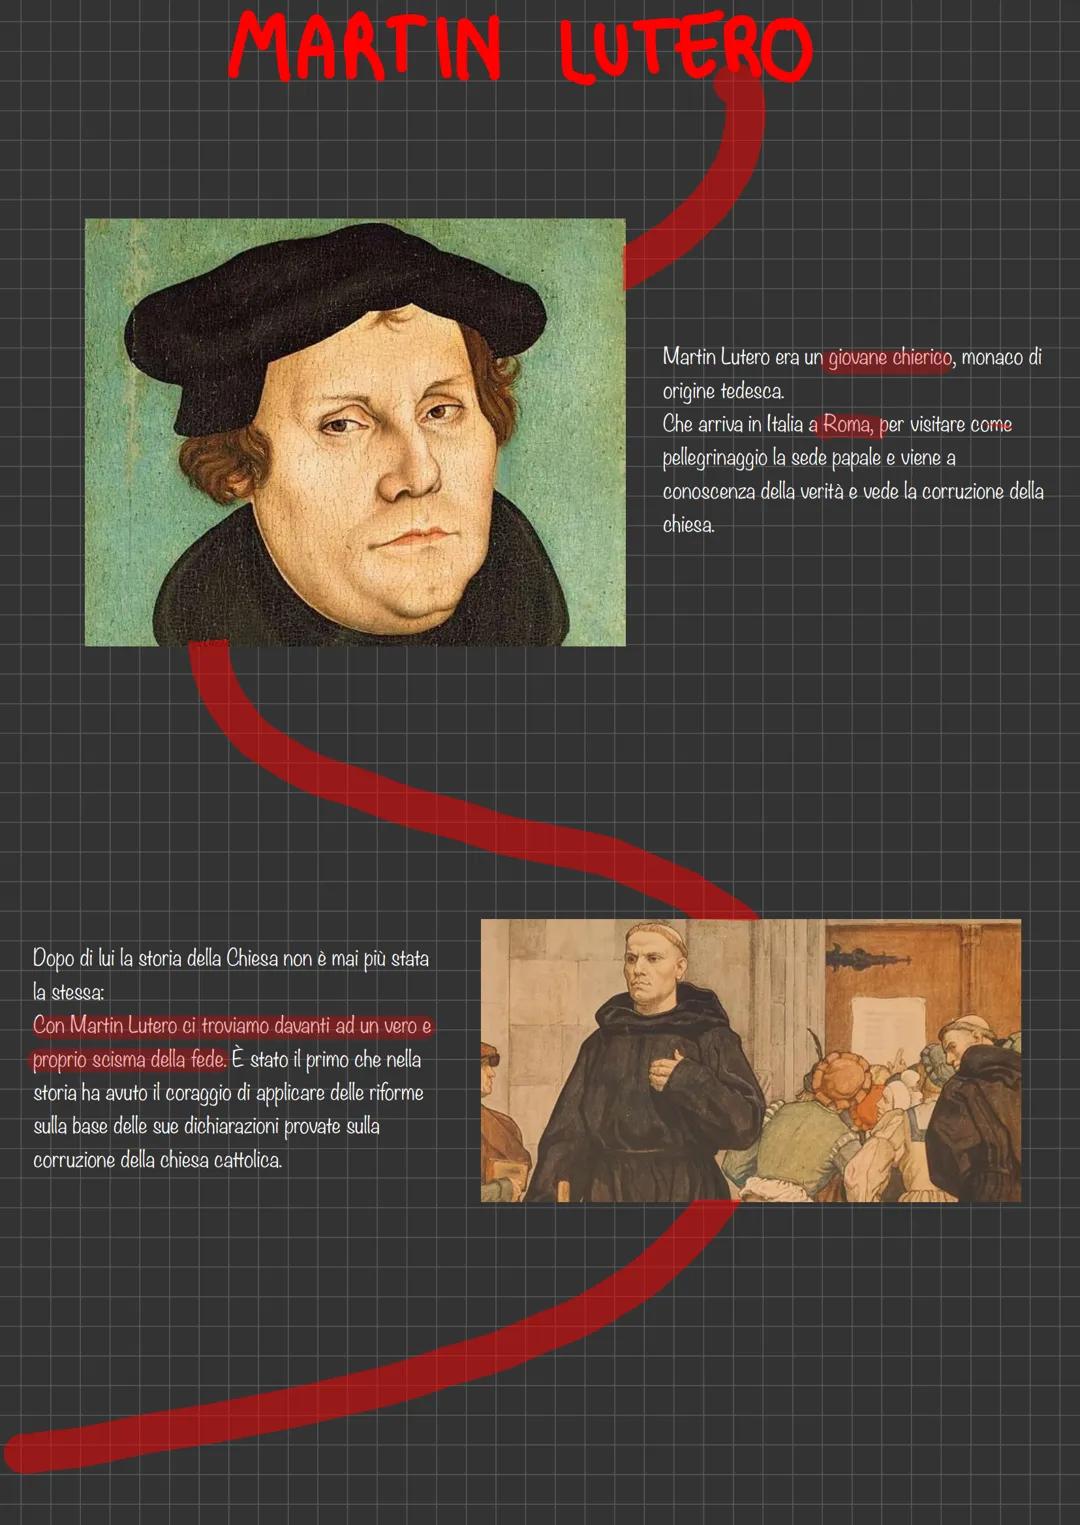 
<p>Con Martin Lutero siamo di fronte a un vero e proprio scisma della fede, che ha cambiato per sempre la storia della Chiesa. Lutero è sta